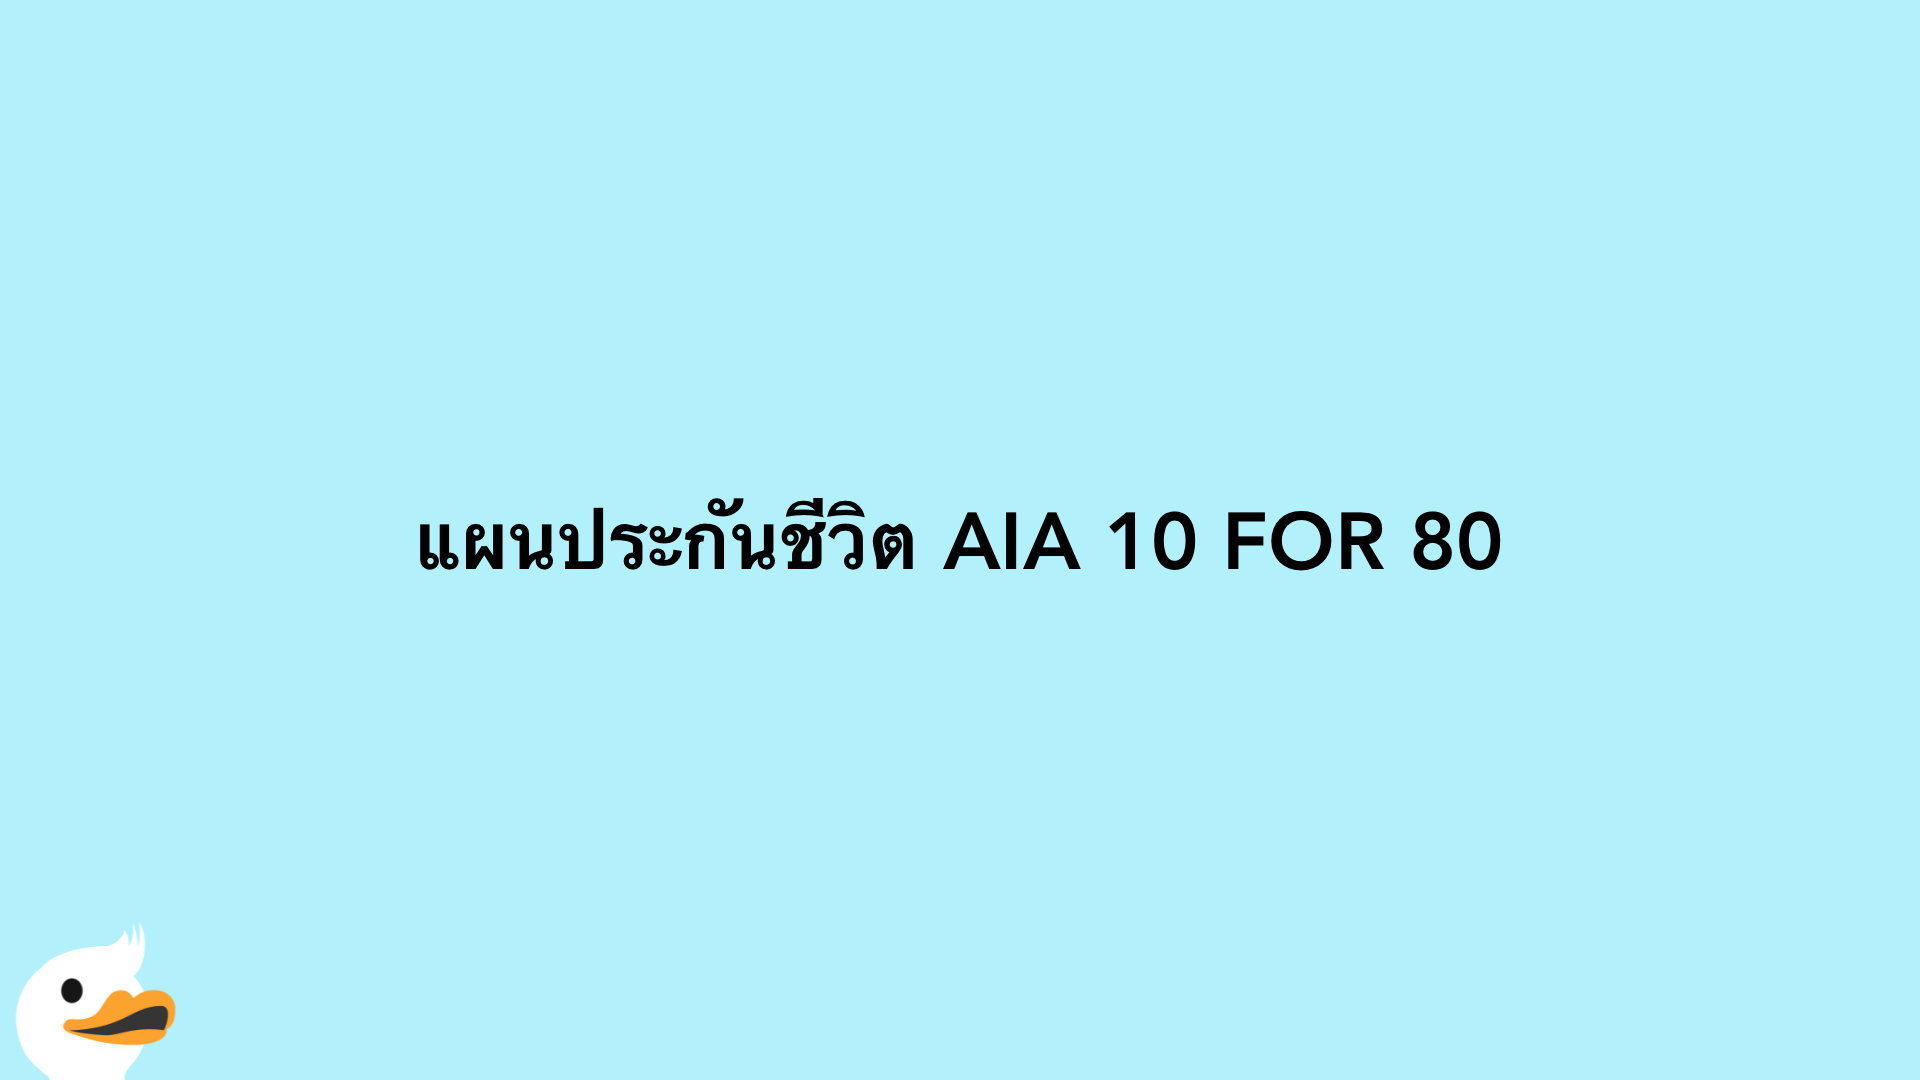 แผนประกันชีวิต AIA 10 FOR 80